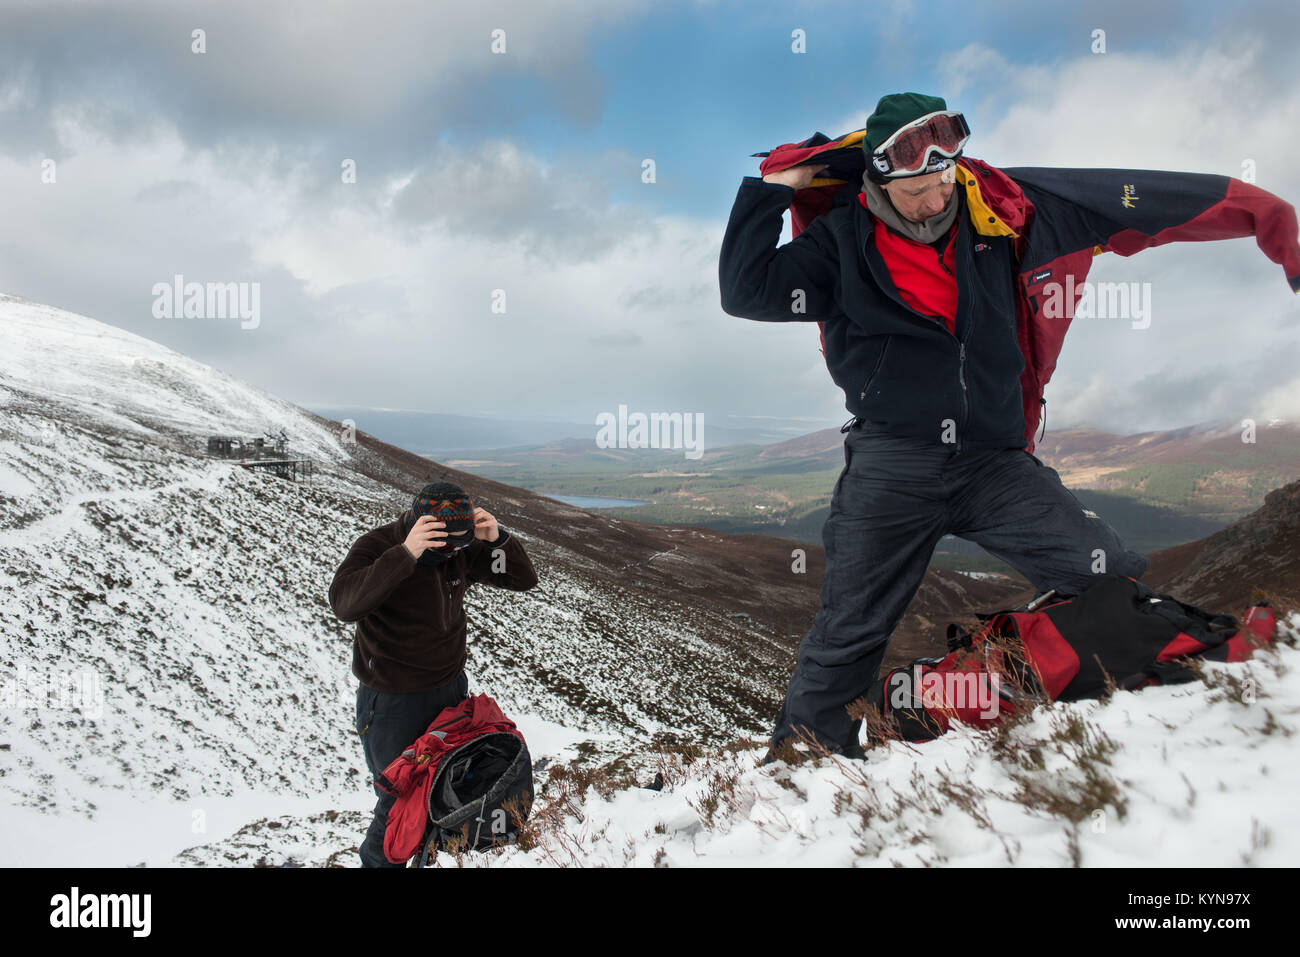 L'hiver de la formation professionnelle dans la région de montagnes de Cairngorm avant la spéléologie voyage. Chaque fois que vous cessez de mettre sur une couche supplémentaire est a doit immédiatement l Banque D'Images